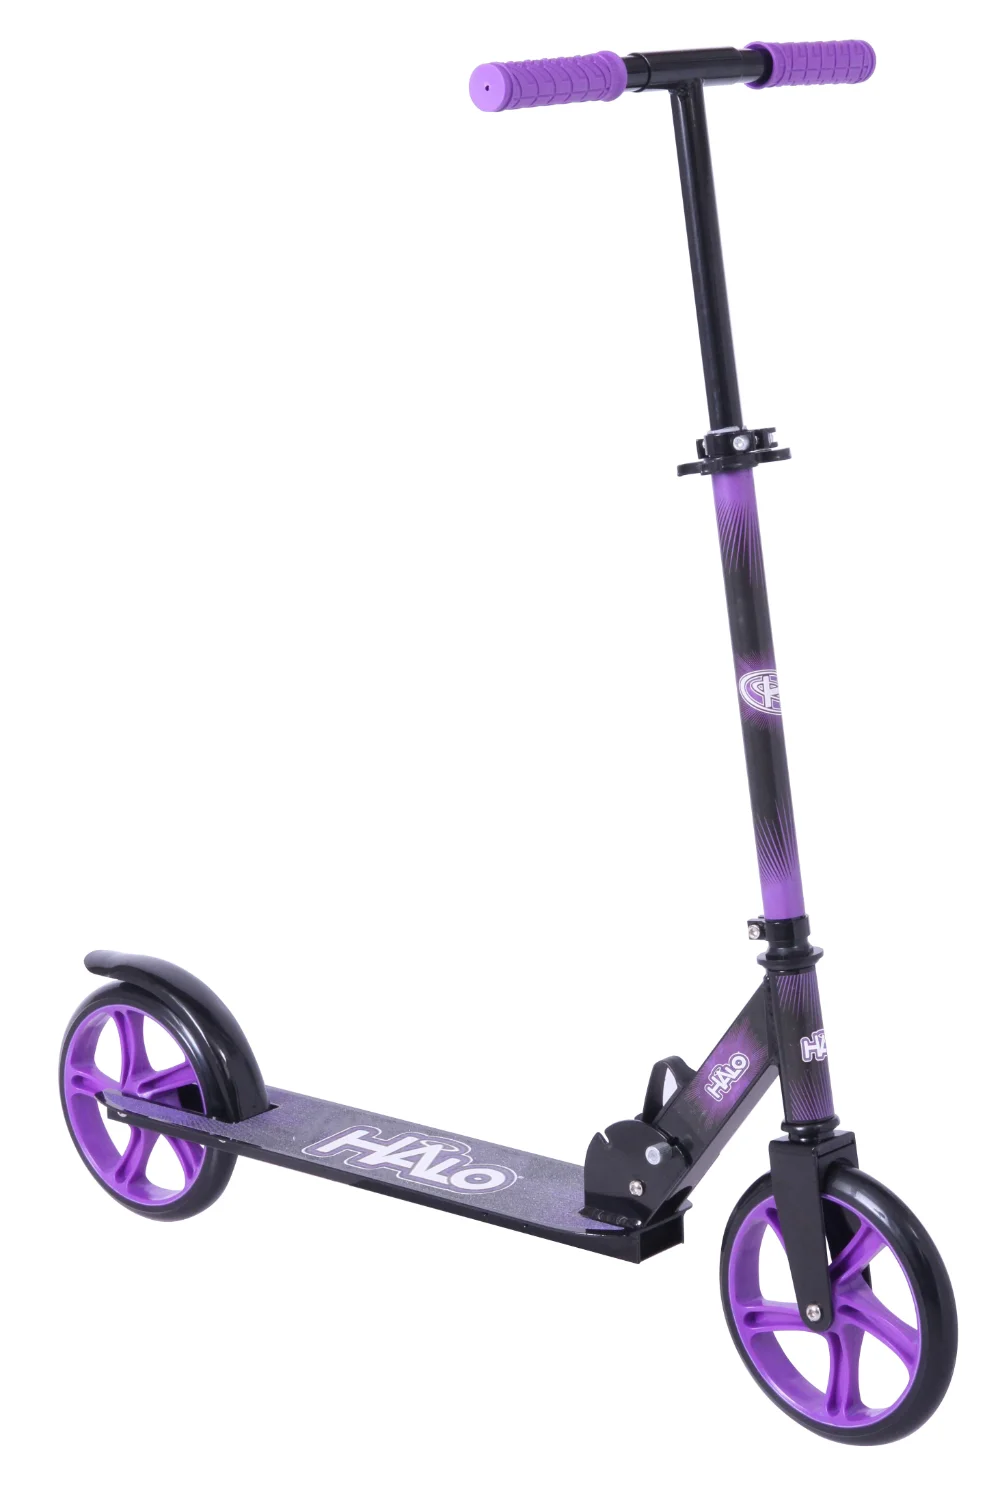 Big Wheel Kick Scooter - Green - Designad för alla ryttare upp till 220 kg - Unisex Kids Scooter